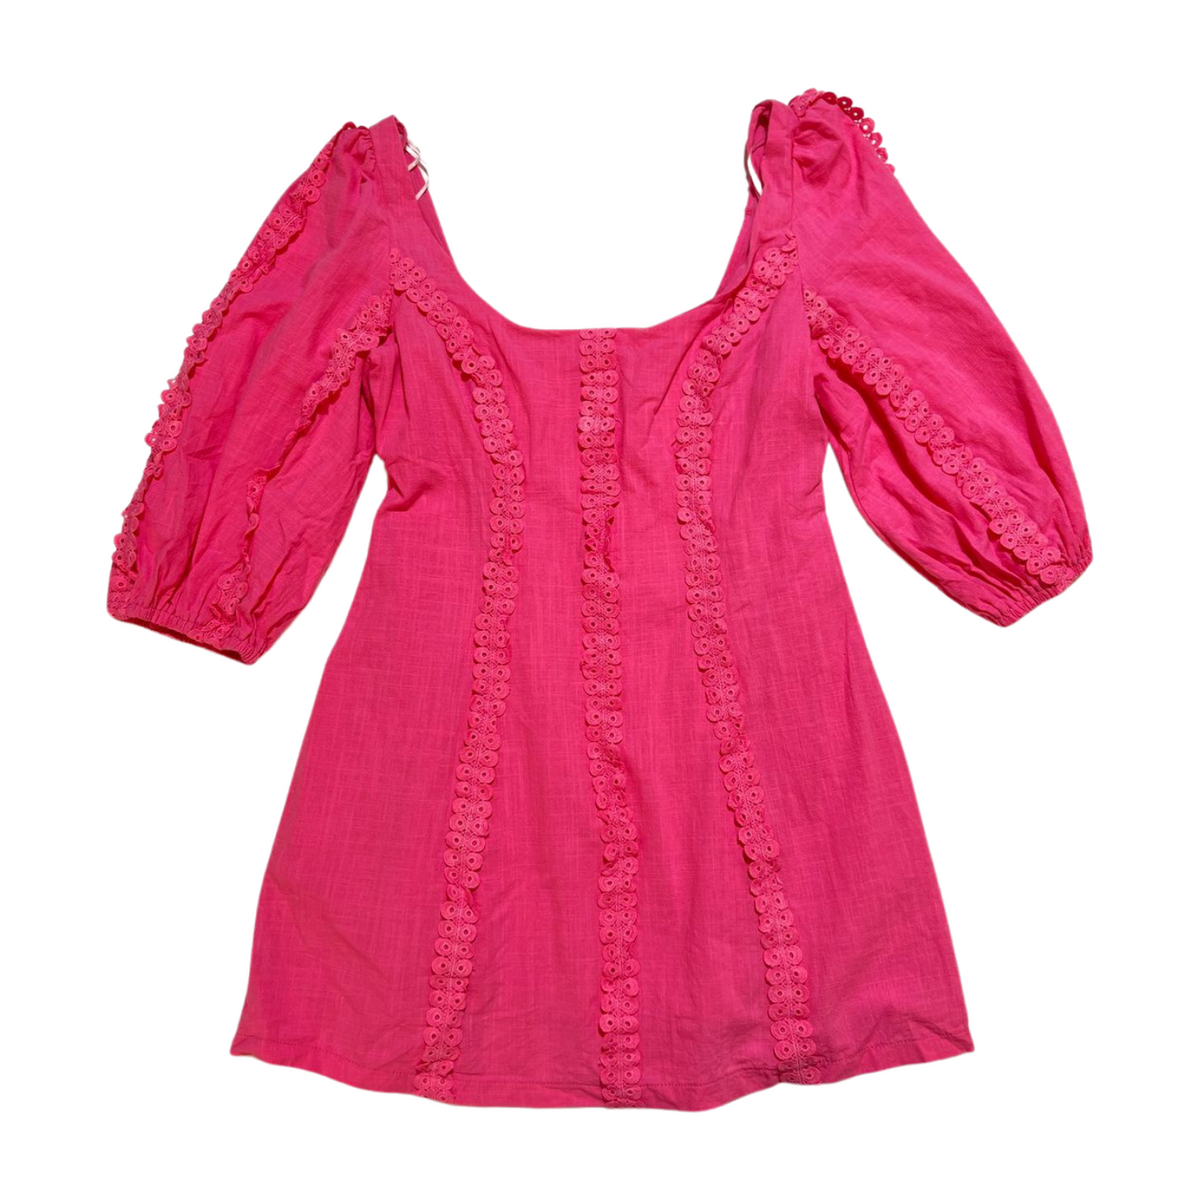 Fortunate One- Pink Puff Sleeve Mini Dress